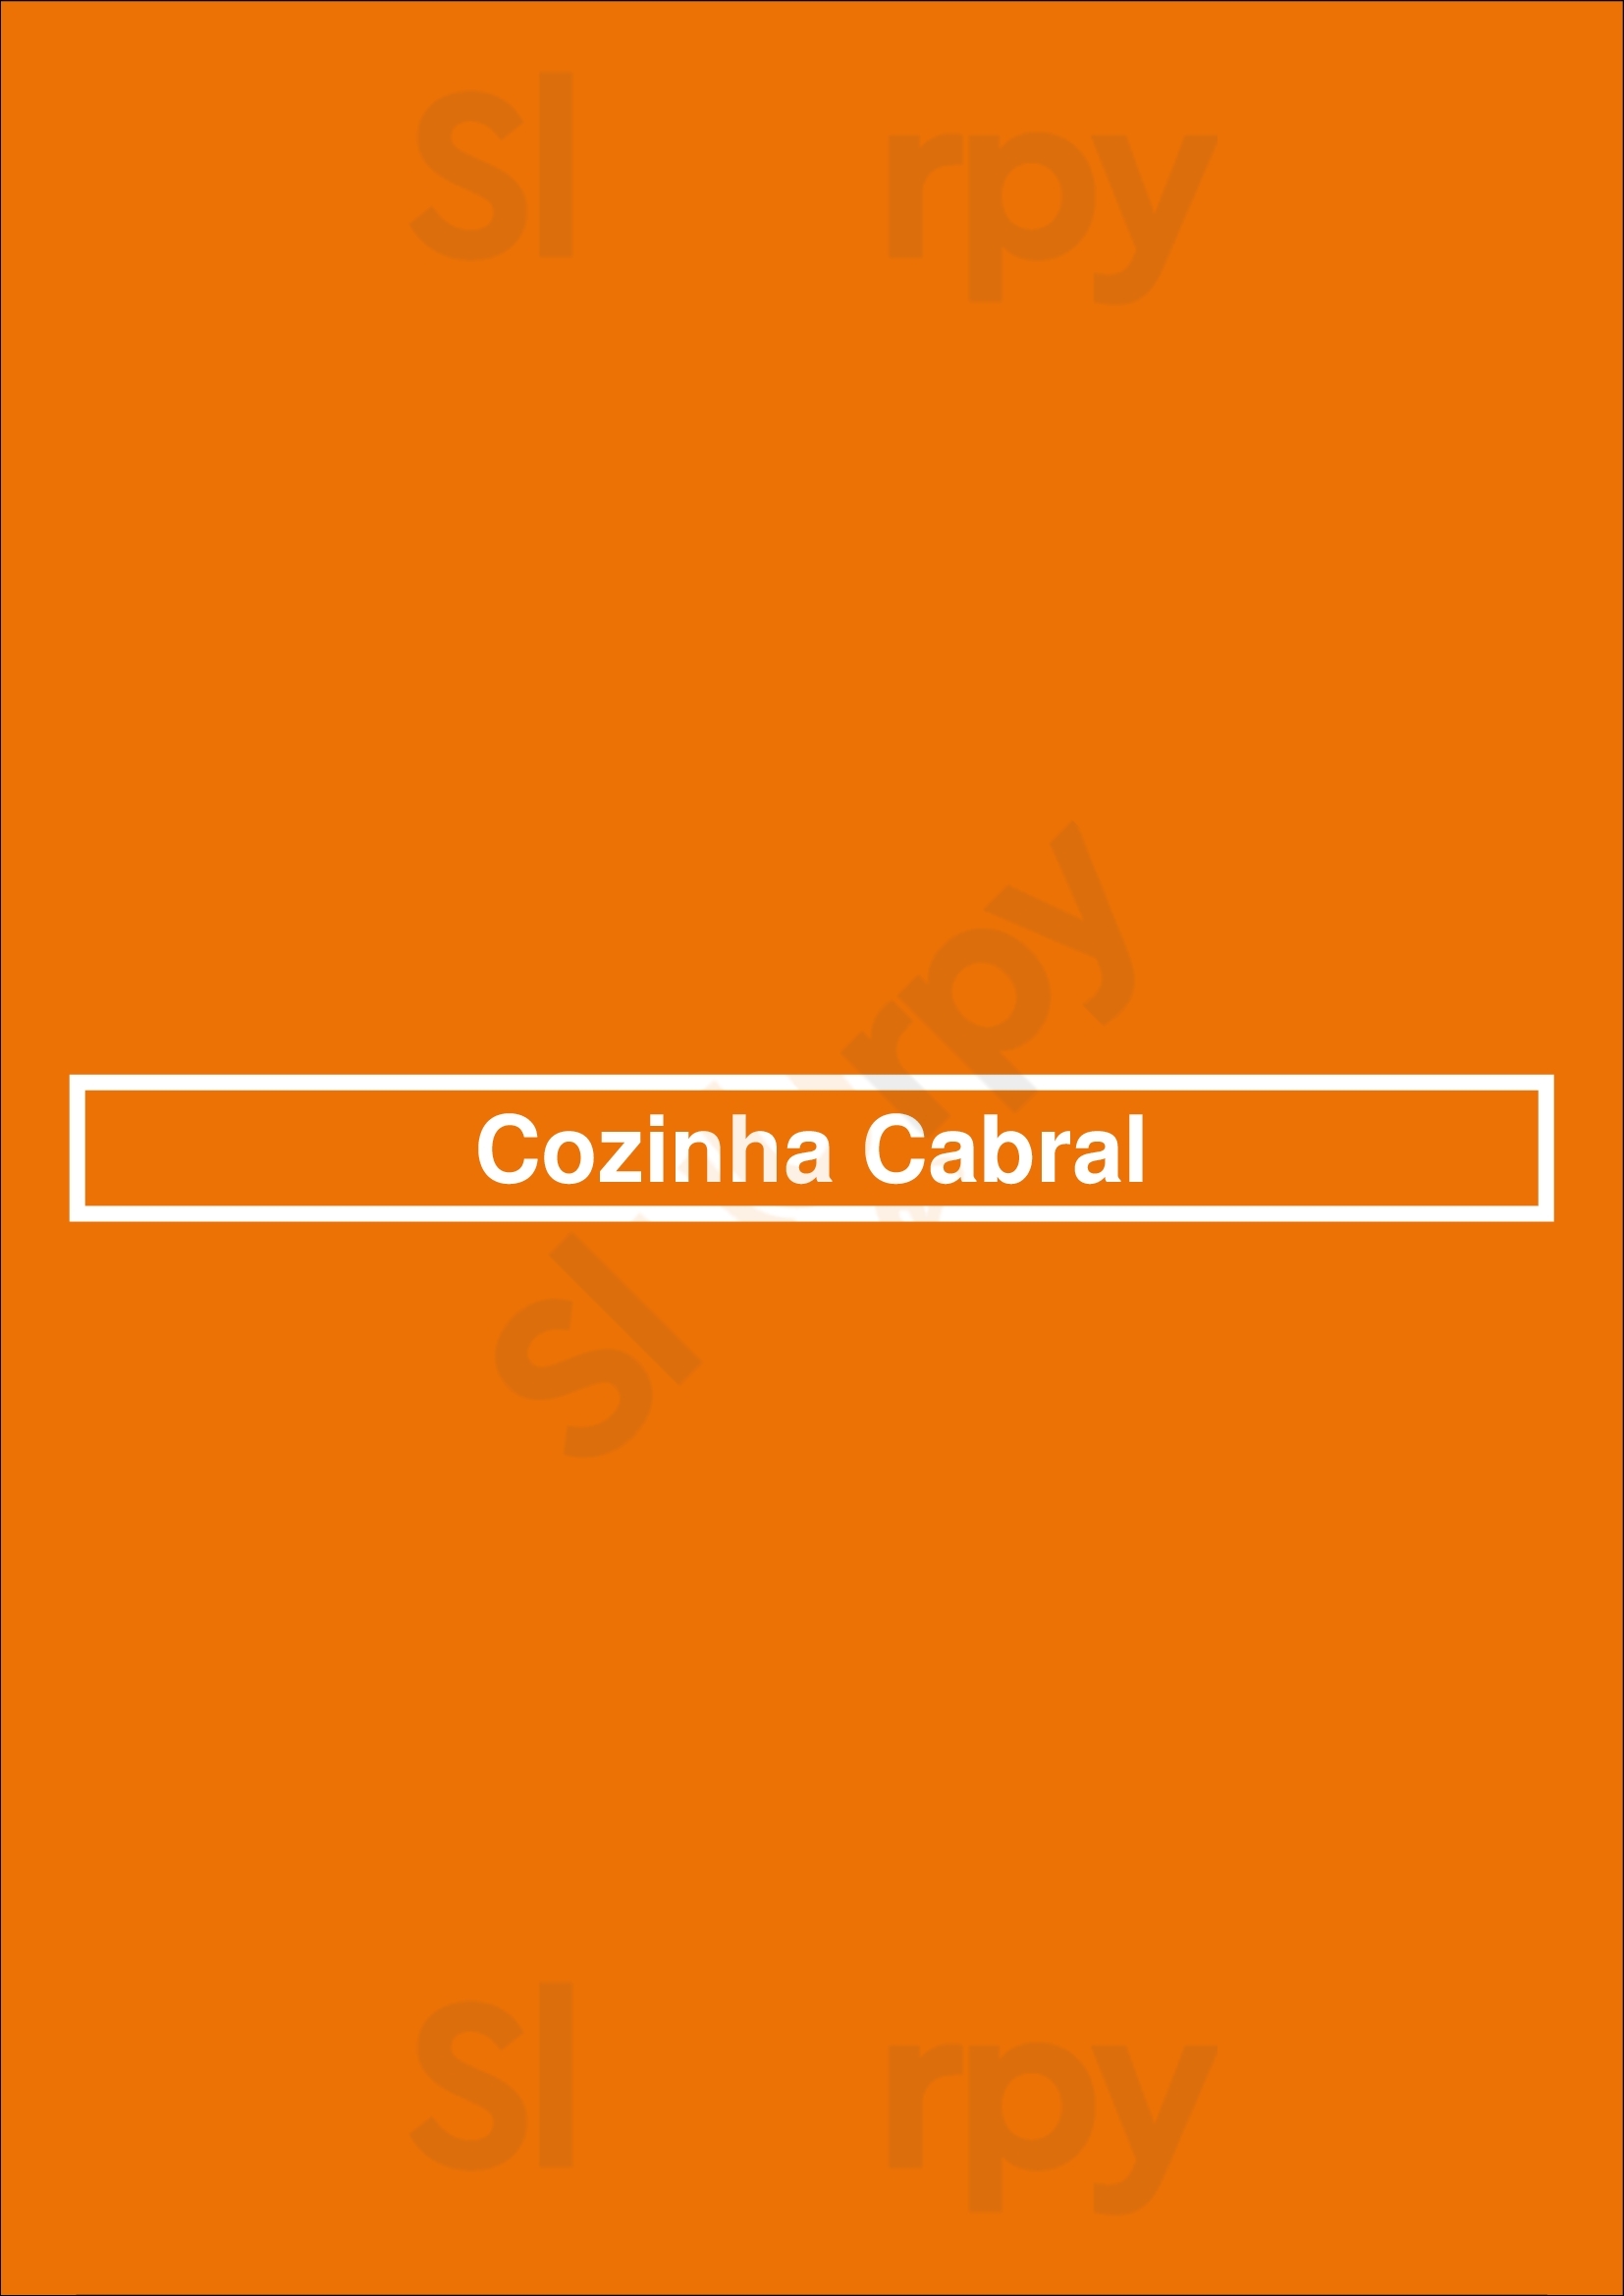 Cozinha Cabral Porto Menu - 1